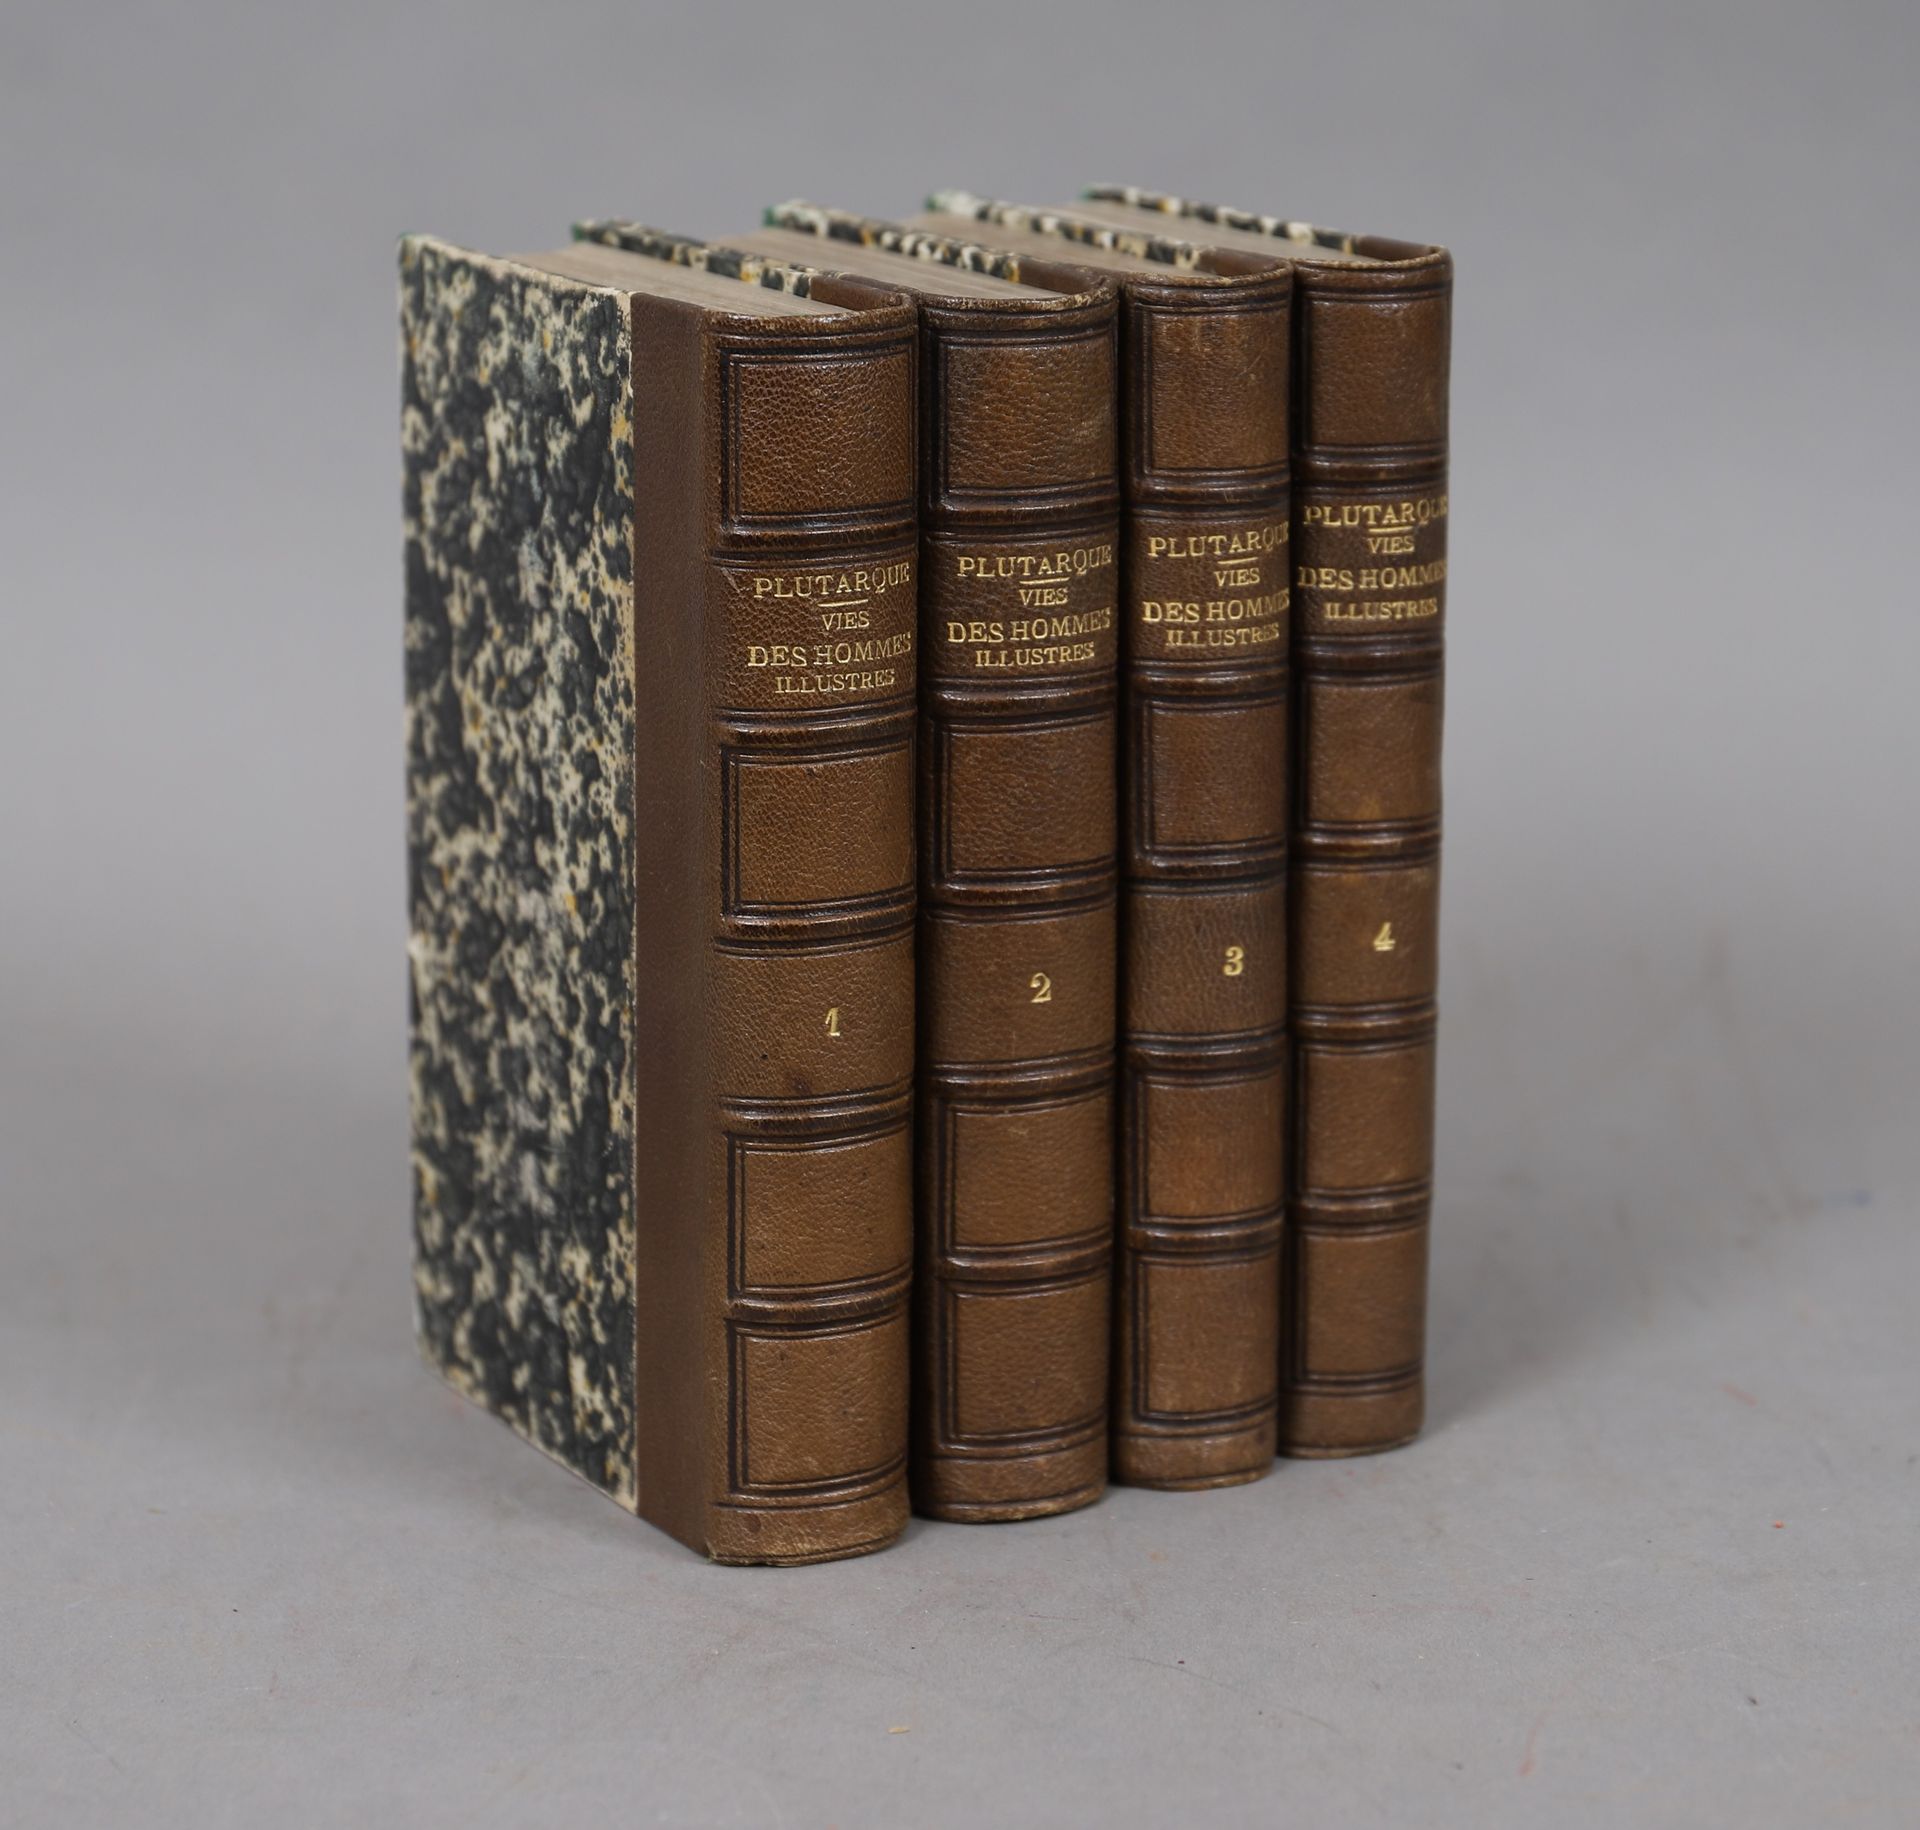 Null PLUTARCO - VIDA DE LOS HOMBRES ILUSTRADOS

4 volúmenes encuadernados.

1861